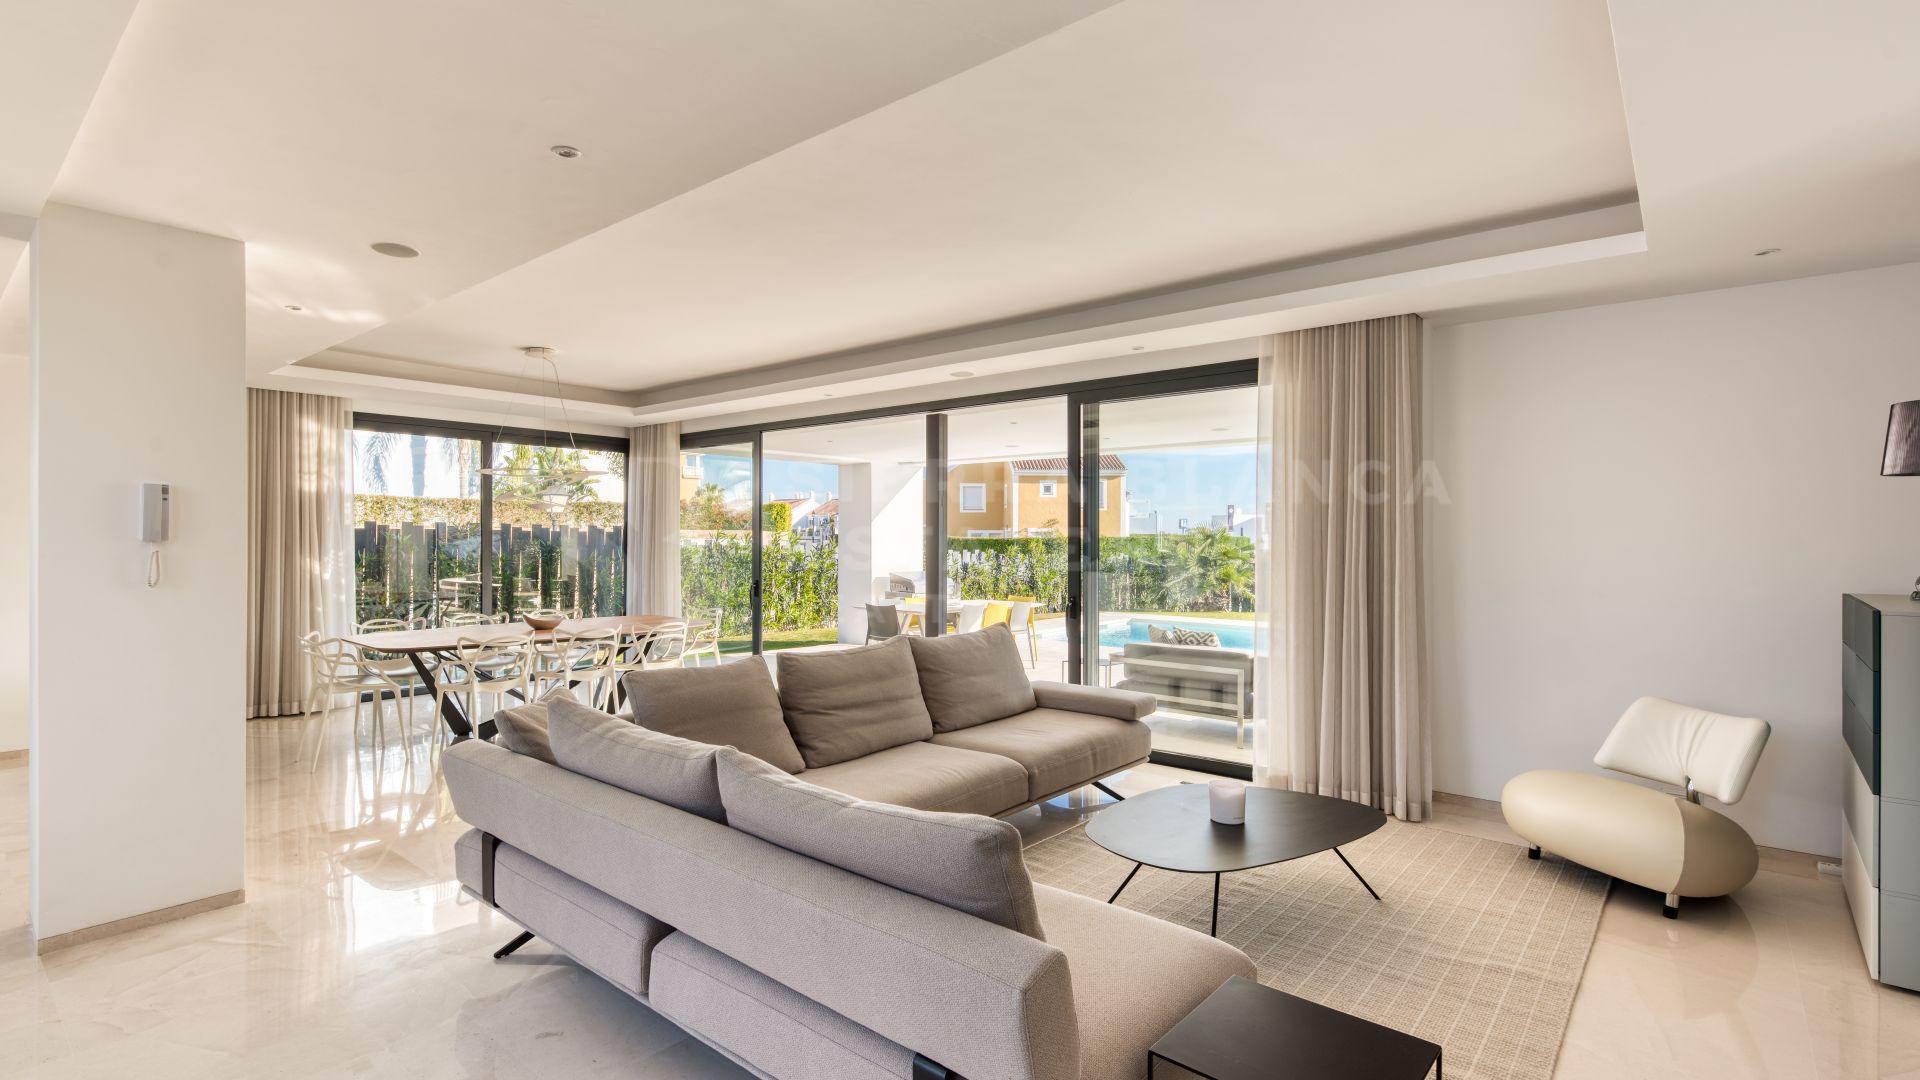 Stylish Contemporary Villa For Rent in Cortijo del Mar